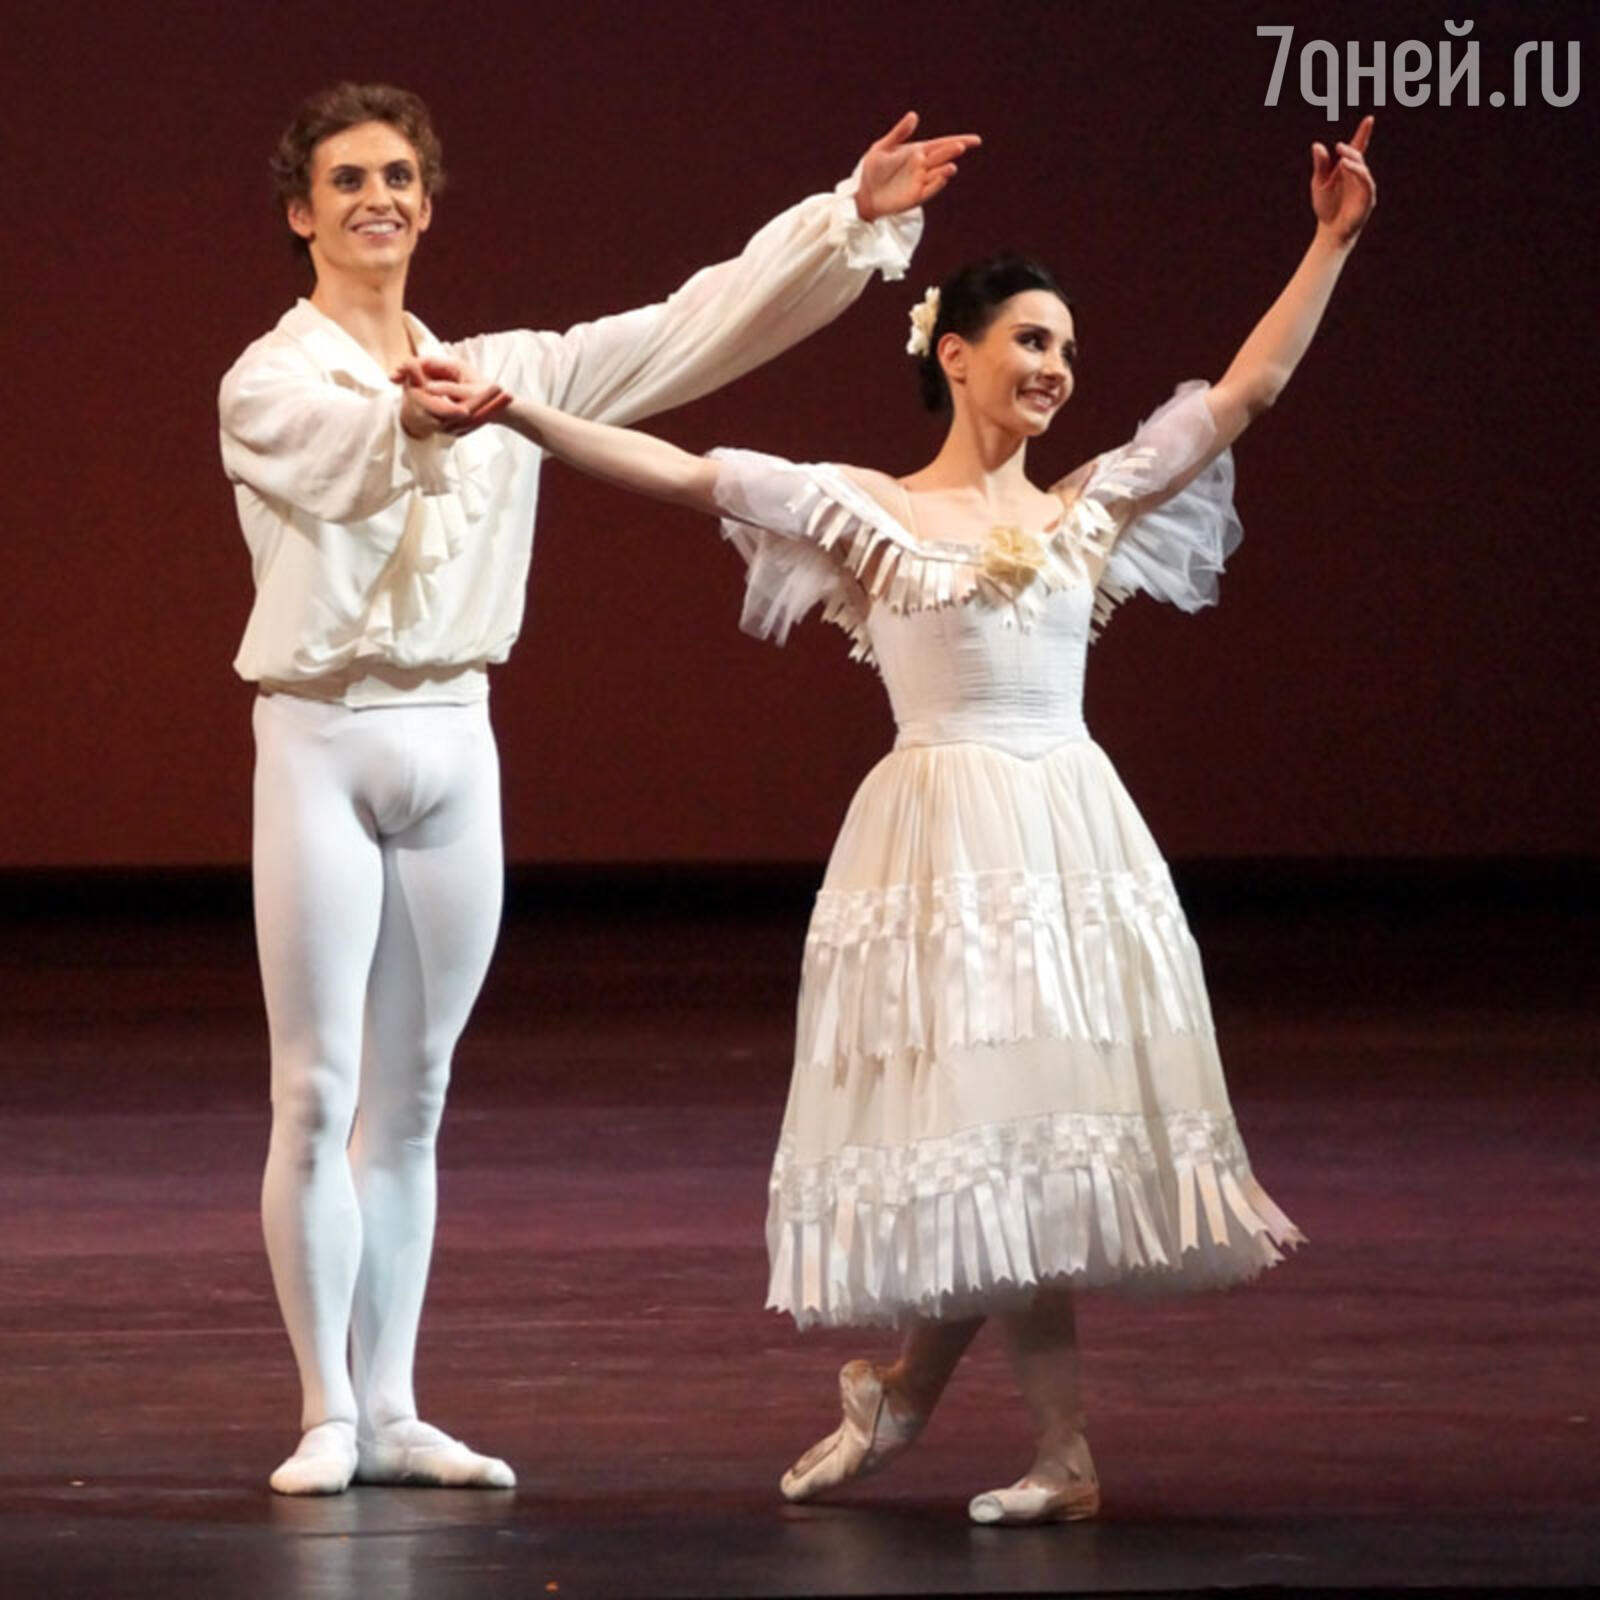 Аполлоны современного балета: топ-5 самых красивых танцовщиков - 7Дней.ру